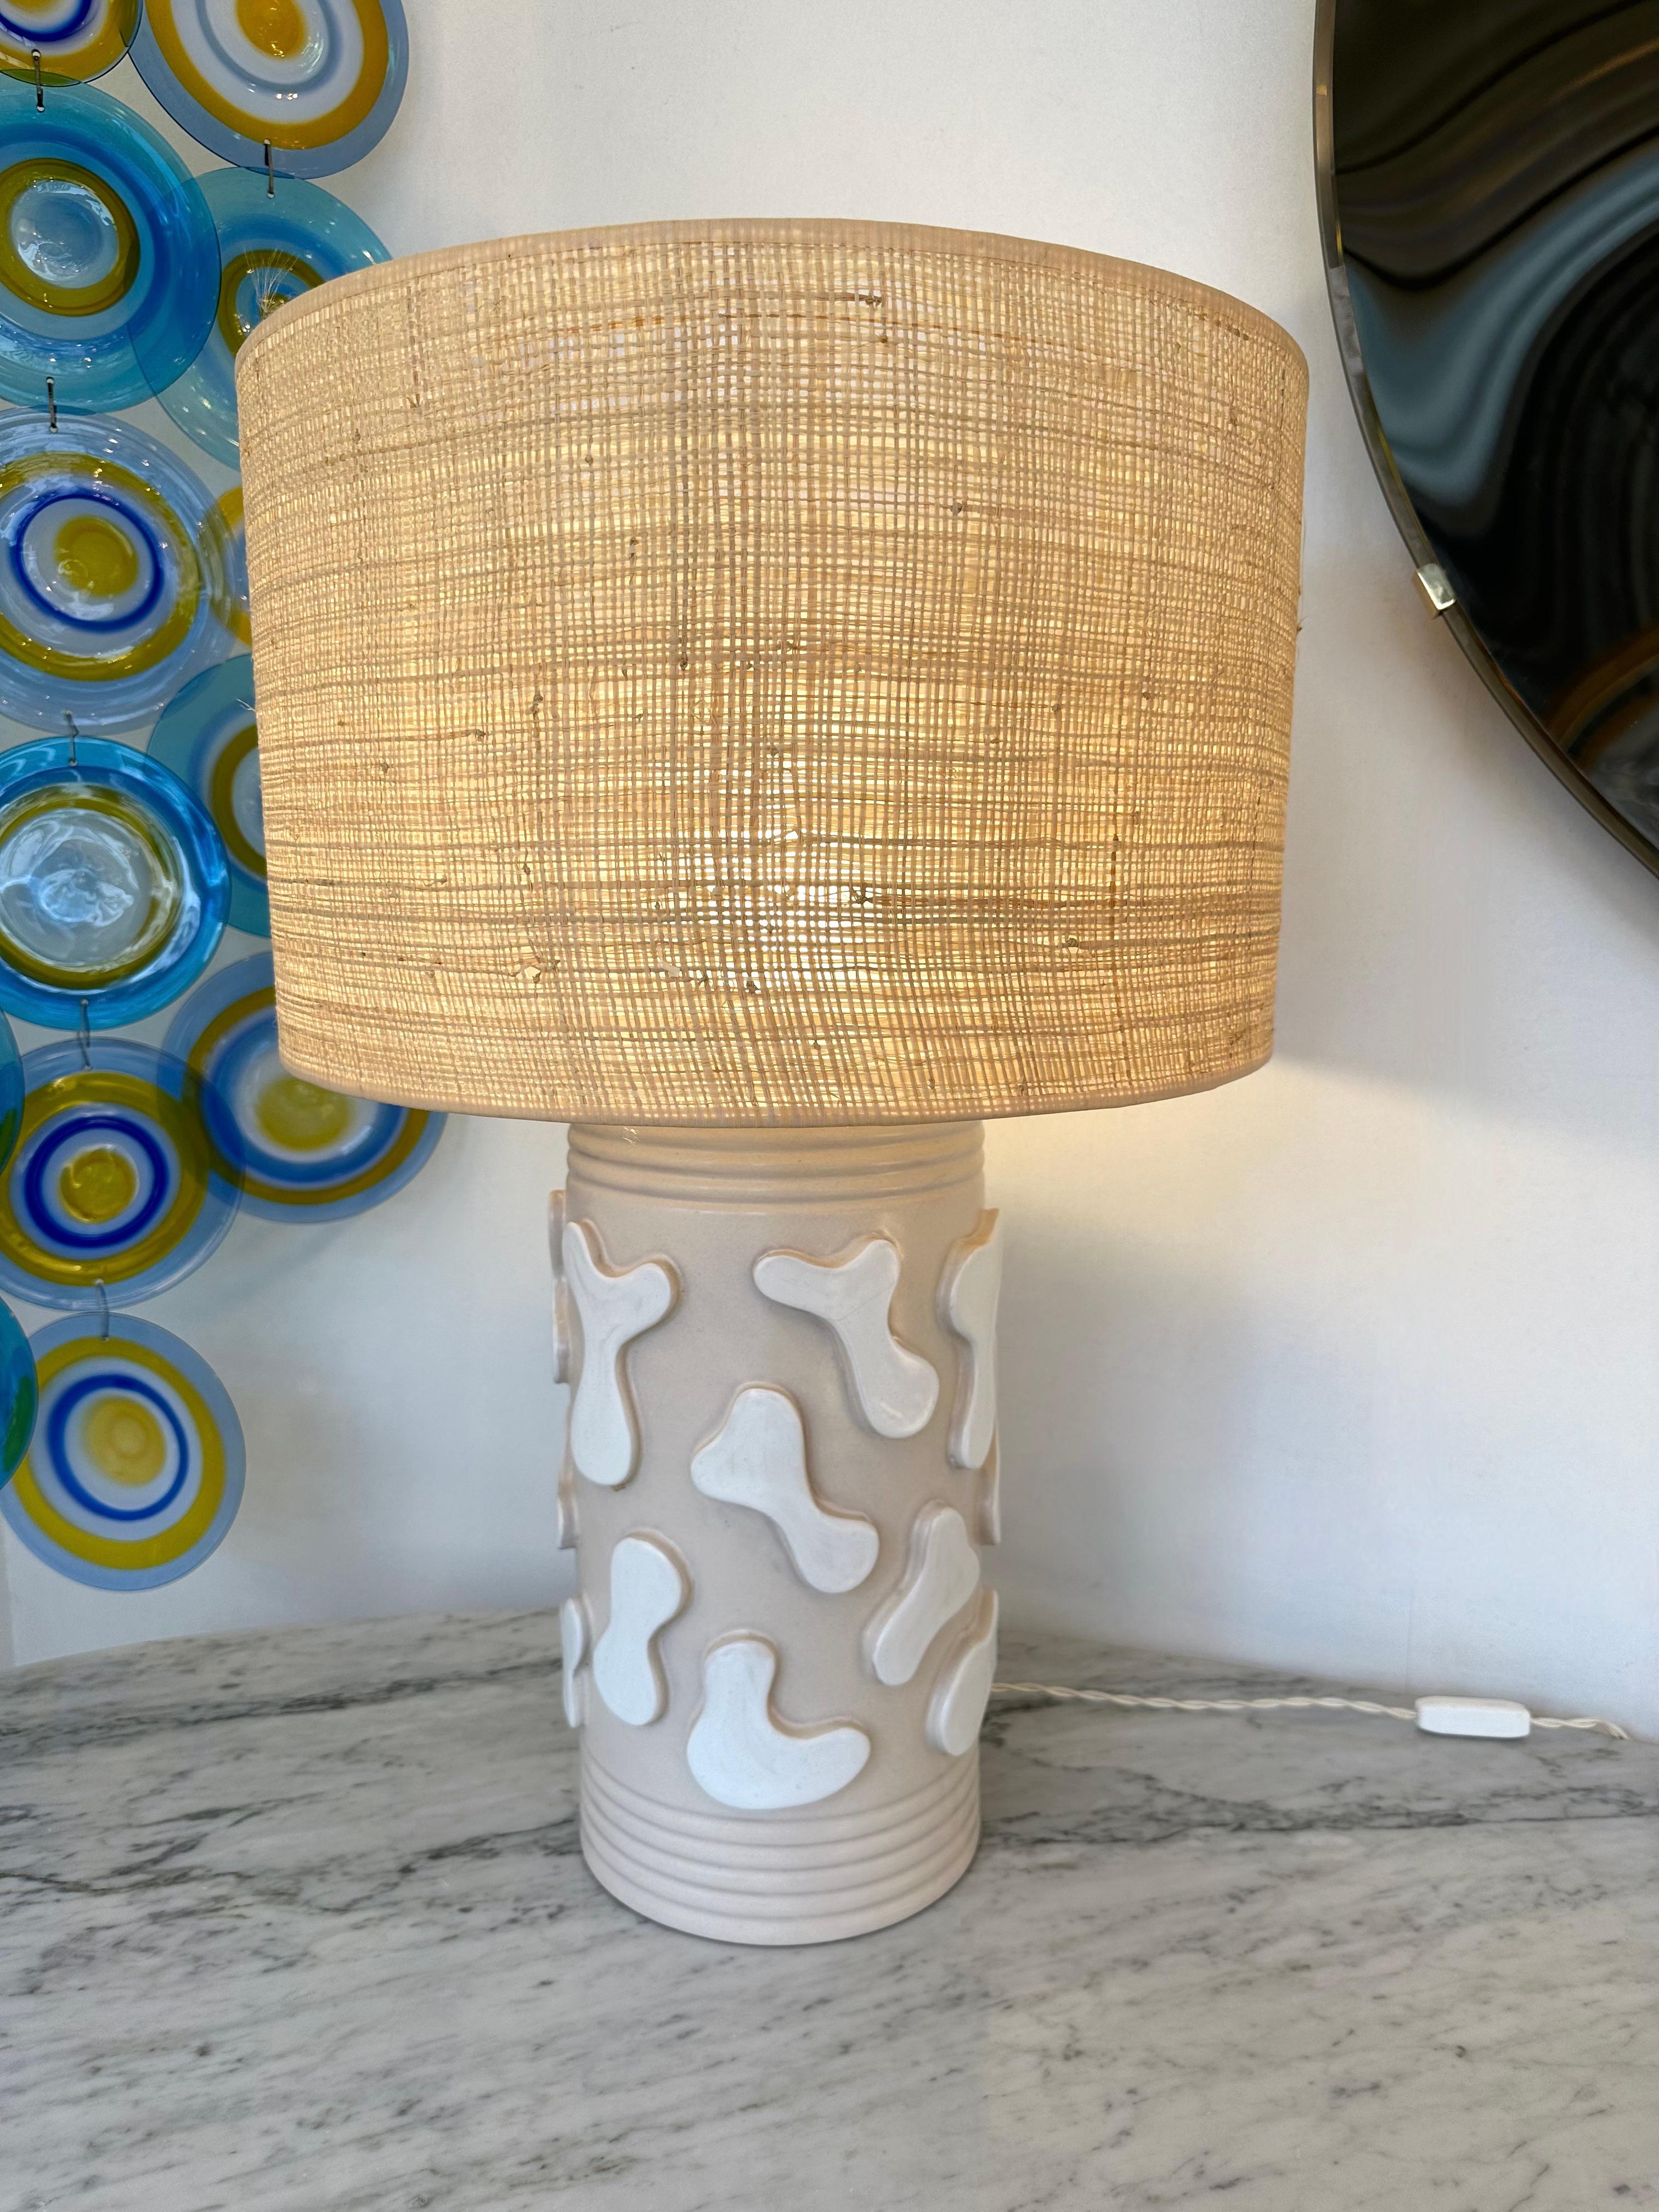 Tisch- oder Nachttischlampen aus naturfarbener Terrakotta-Keramik, hergestellt von dem italienischen Künstler Antonio's Cagianelli. Monogramm AC unterschreiben. Edition Stanislas Reboul Gallery, limitiert auf 20 Exemplare. Einige der Werke von